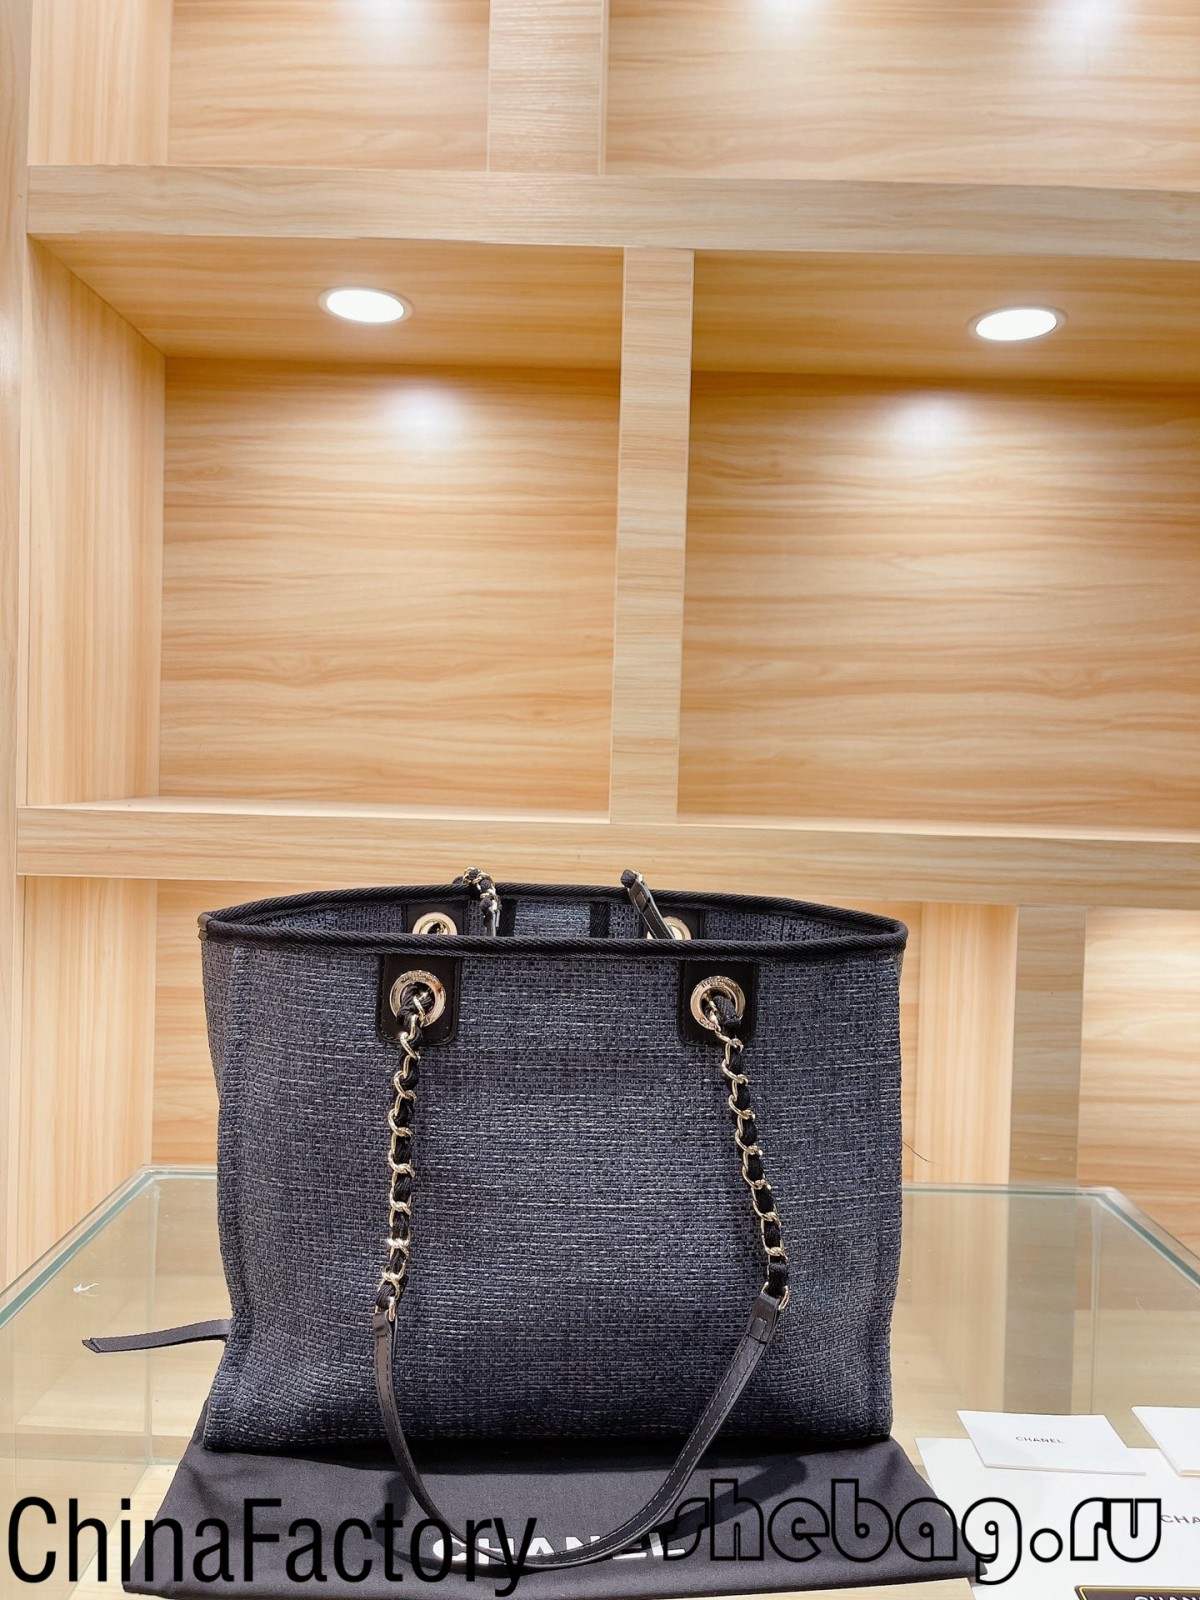 Odporúčanie veľkoobchodného predajcu replika tašky Chanel Deauville Canvas Tote (najhorúcejšie 2022) – Najkvalitnejšia falošná taška Louis Vuitton Online obchod, replika značkovej tašky ru